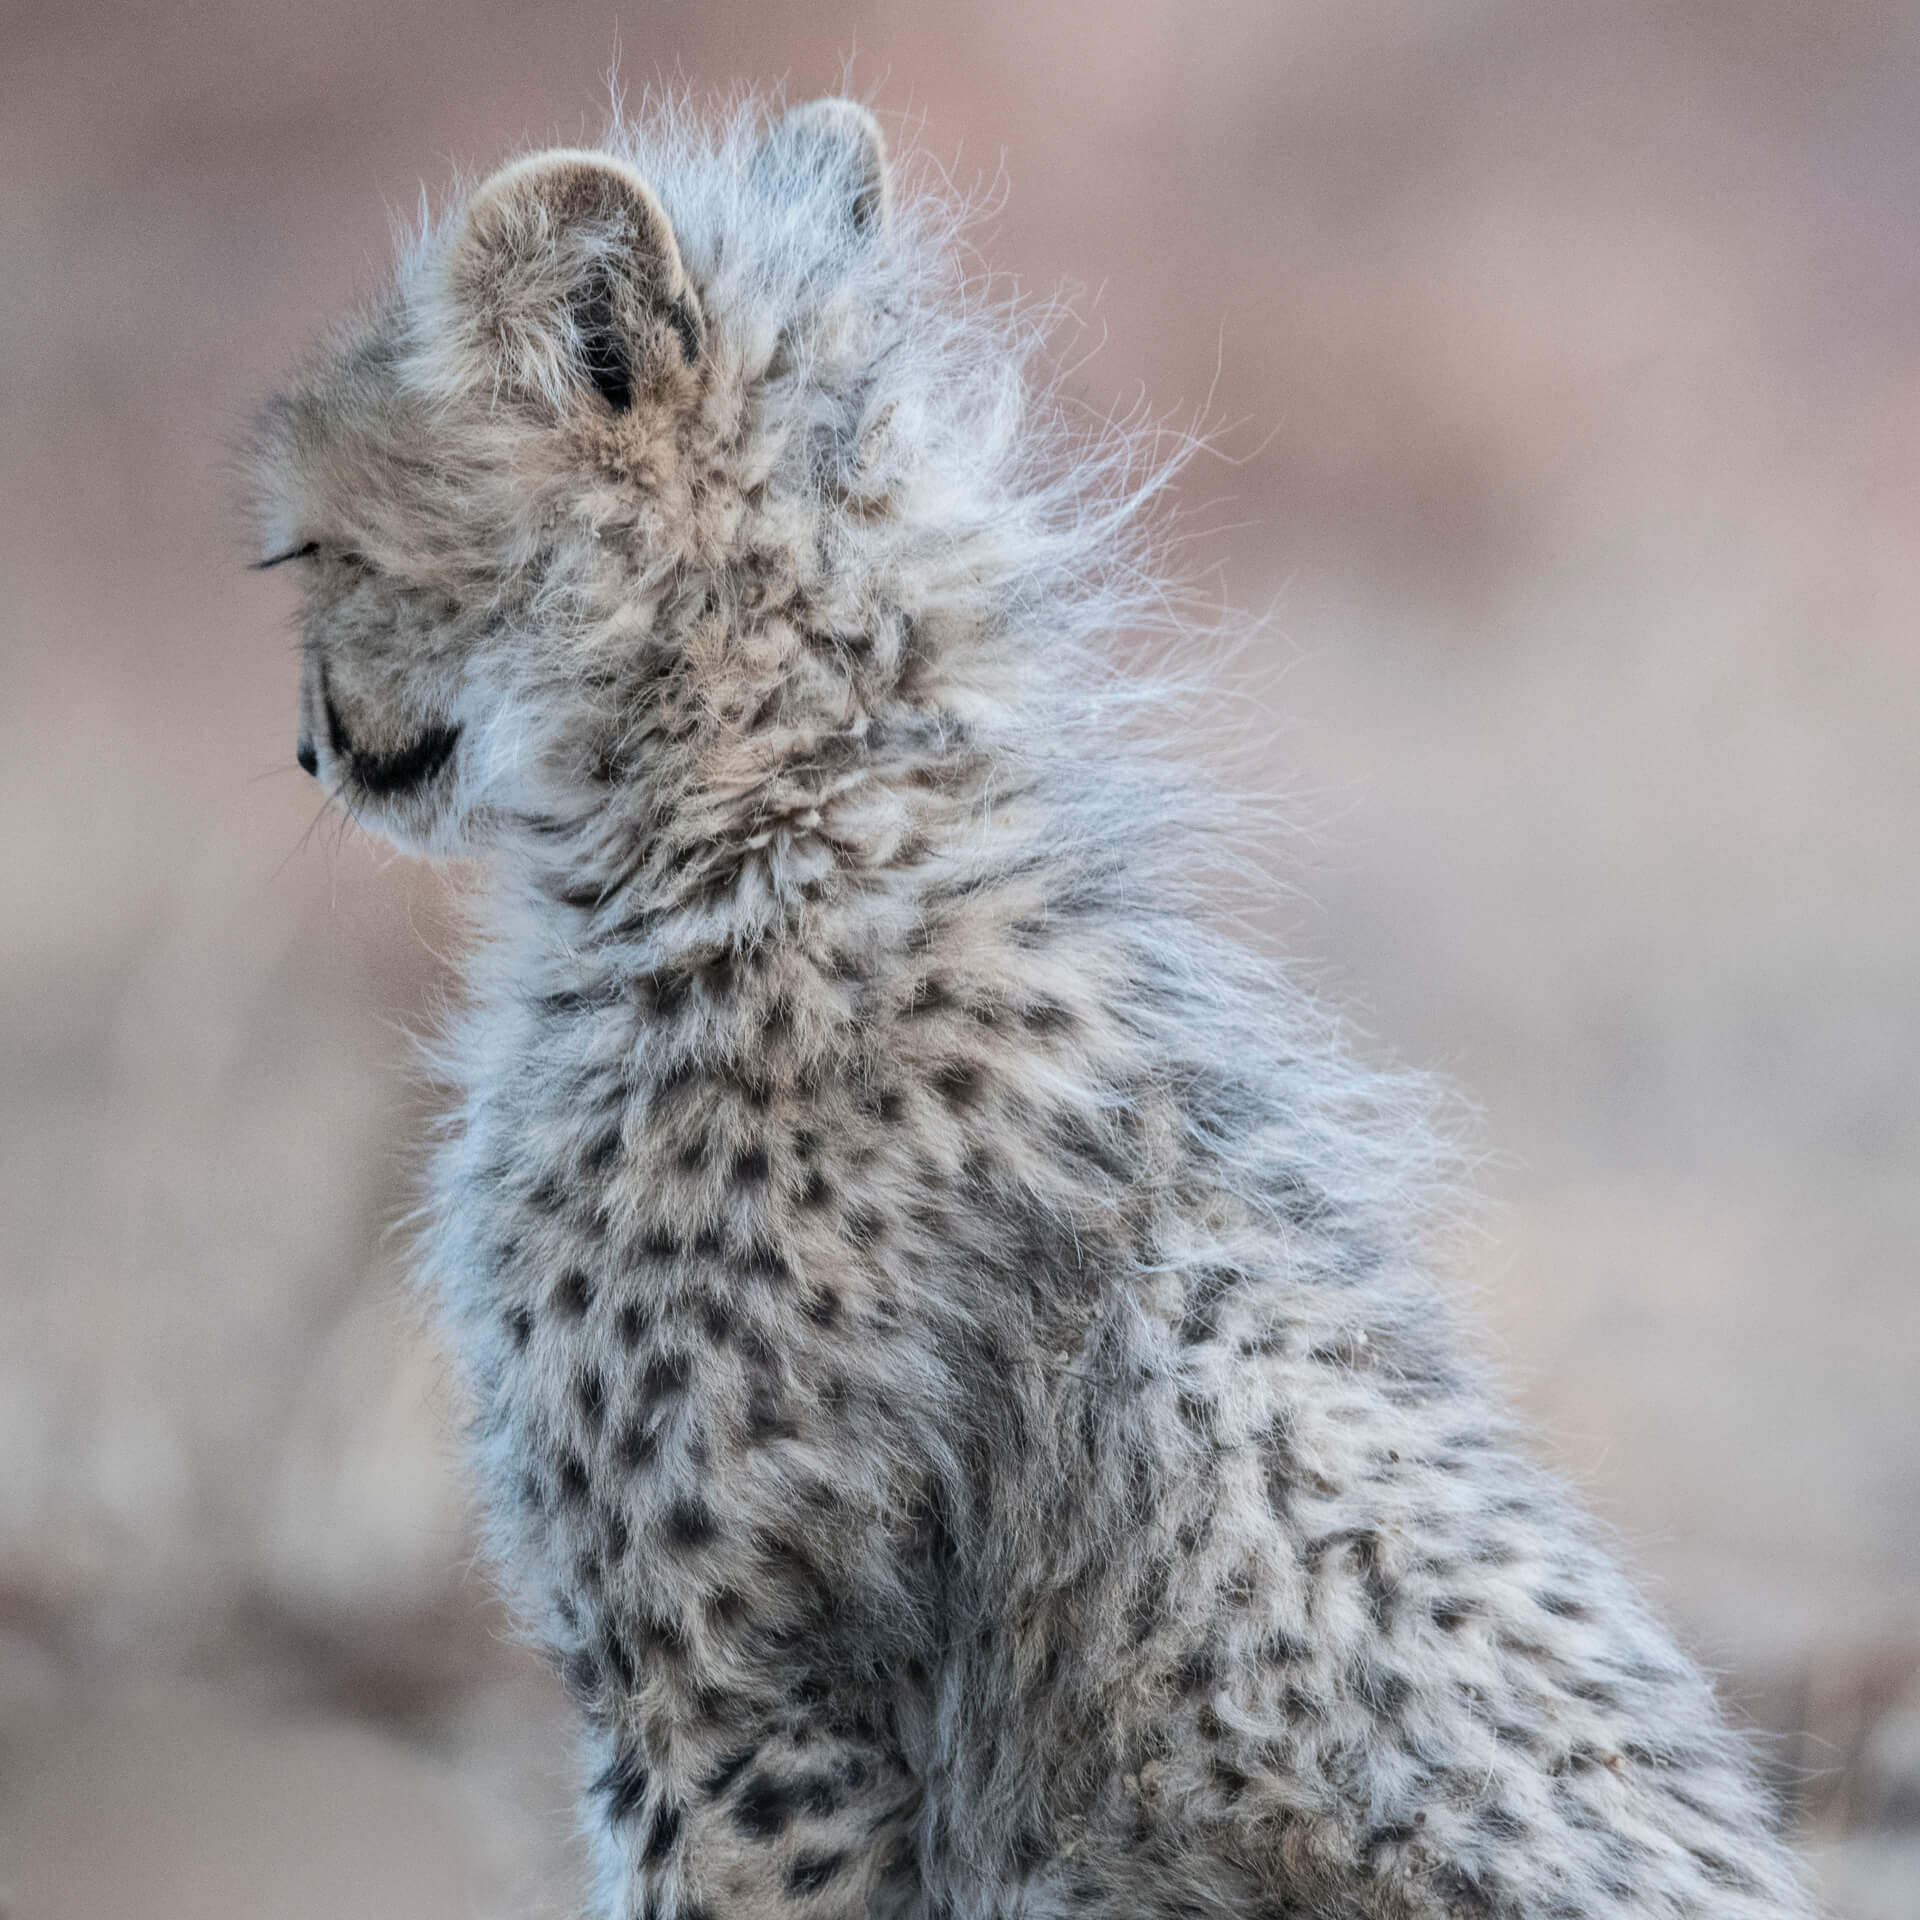 Cheetah, South Africa, 2019